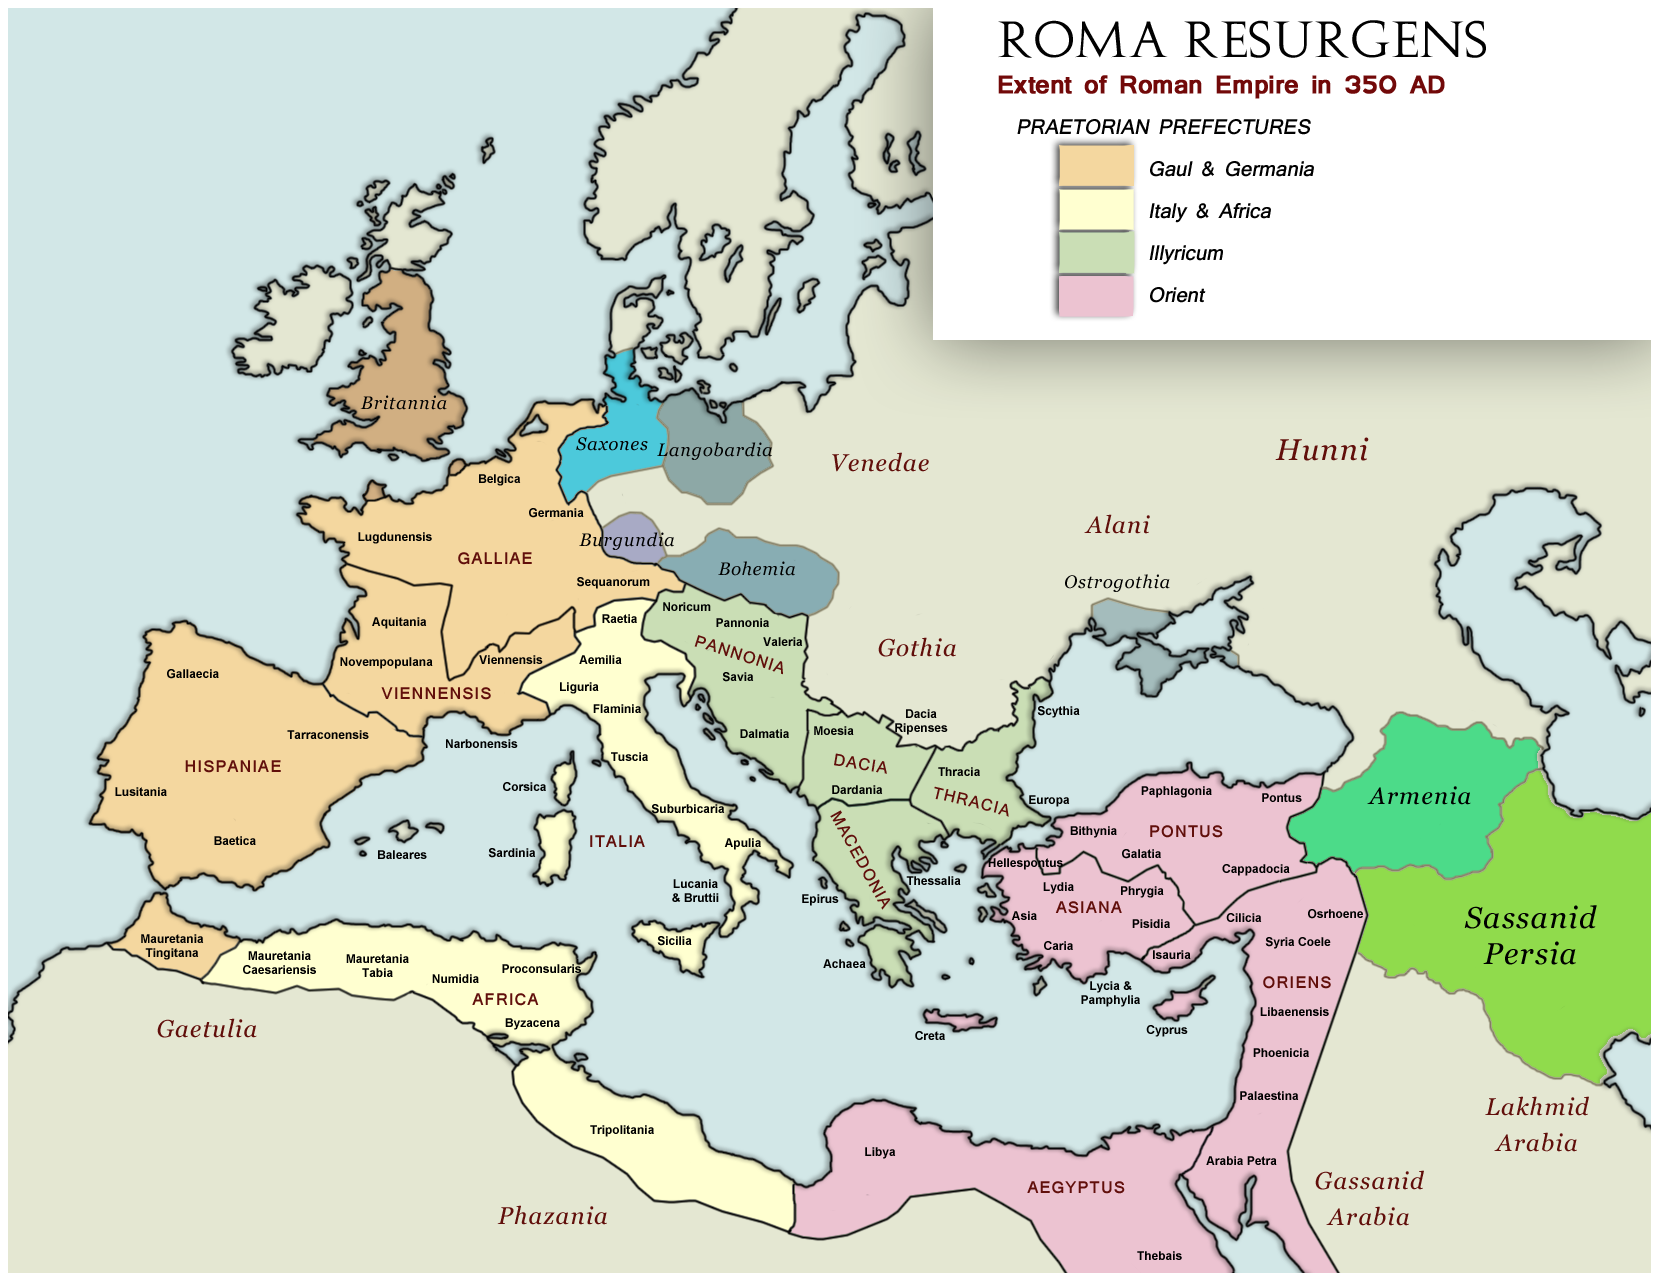 Tempus Omnia Revelat Roma Resurgens